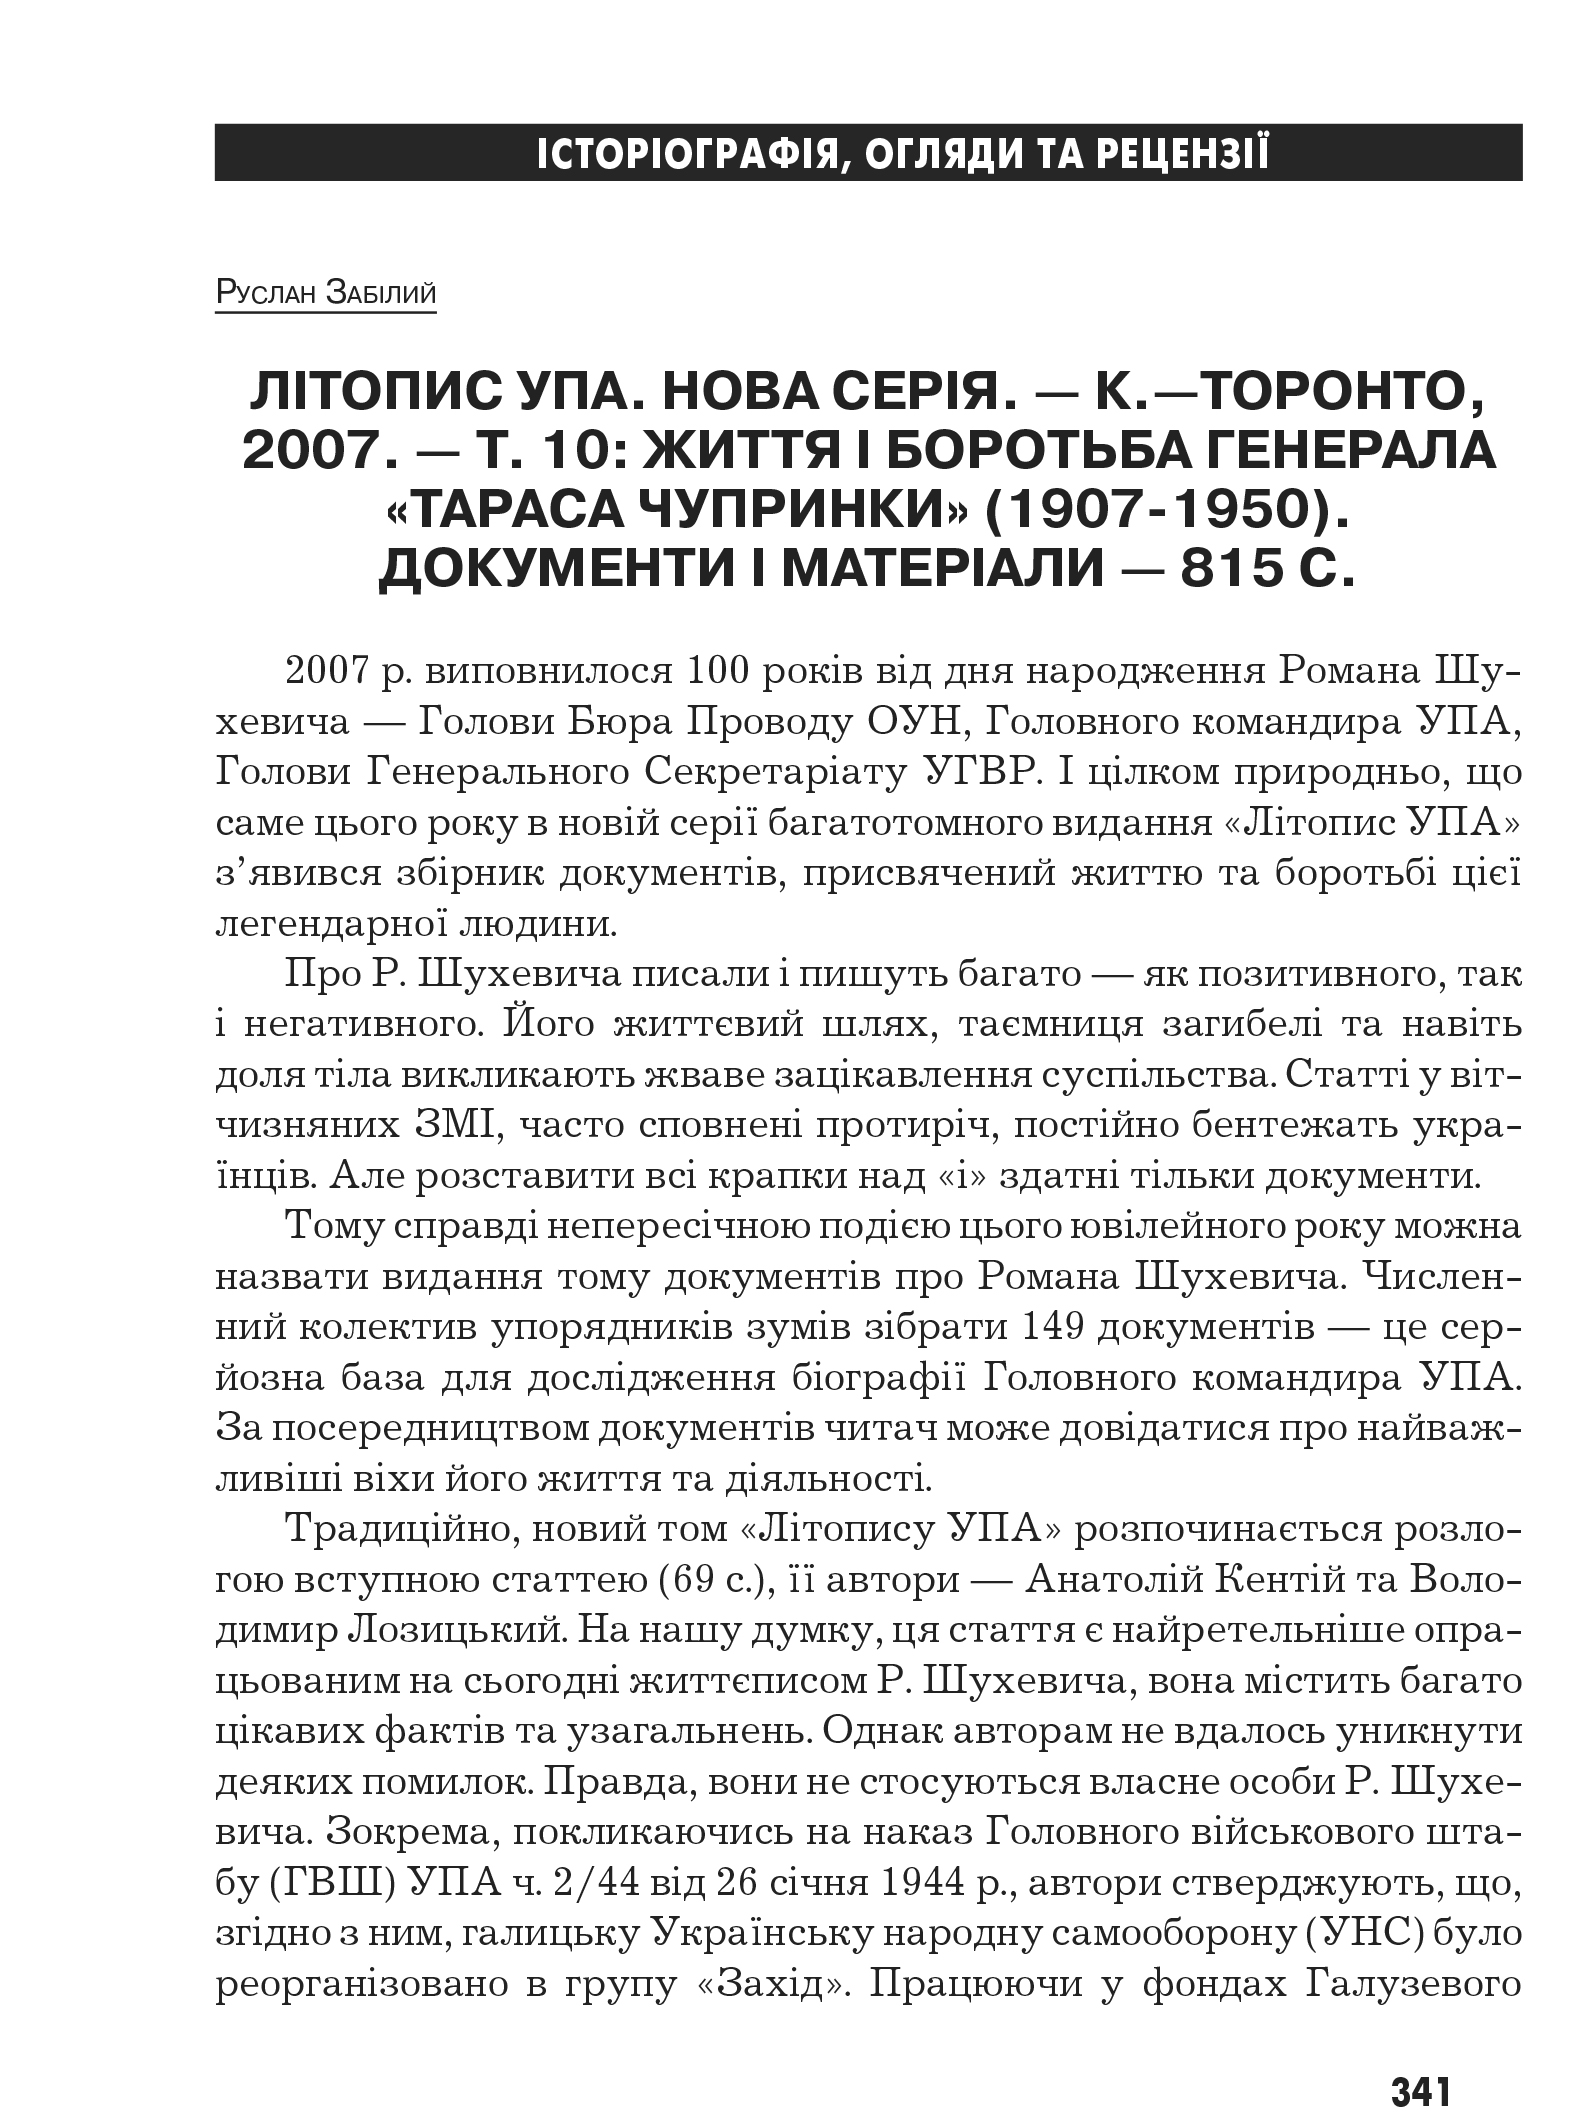 Український визвольний рух №10, ст. 341 - 344